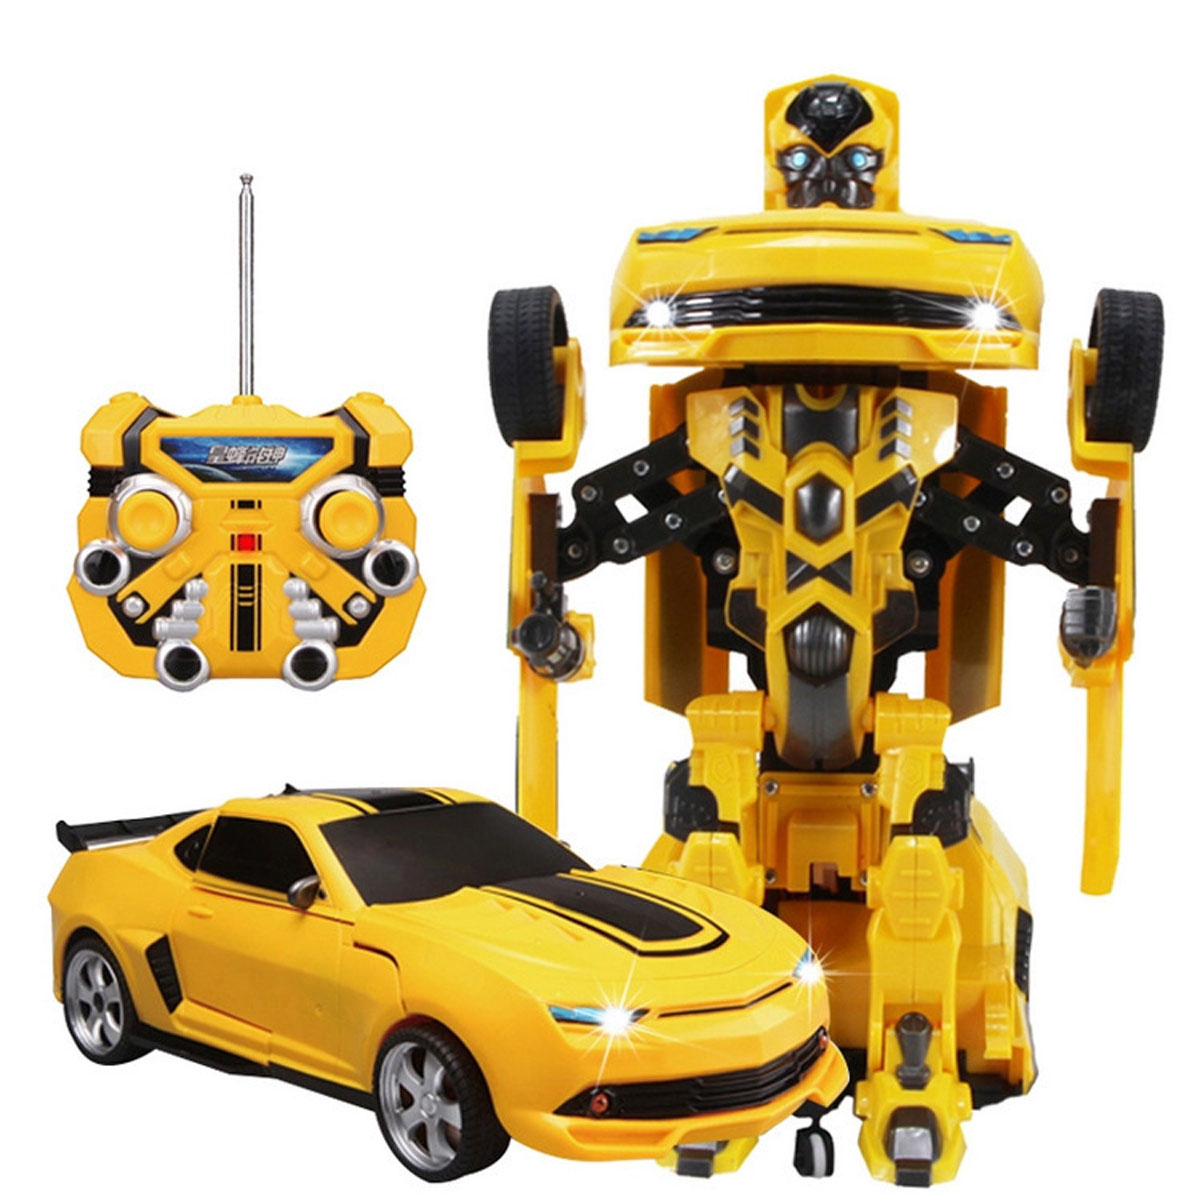 Machines transformers. Большой робот Бамблби Bumblebee трансформер. Bumblebee трансформер радиоуправлении. Трансформер Бамблби 40 см. Робот Бамблби трансформер на пульте.